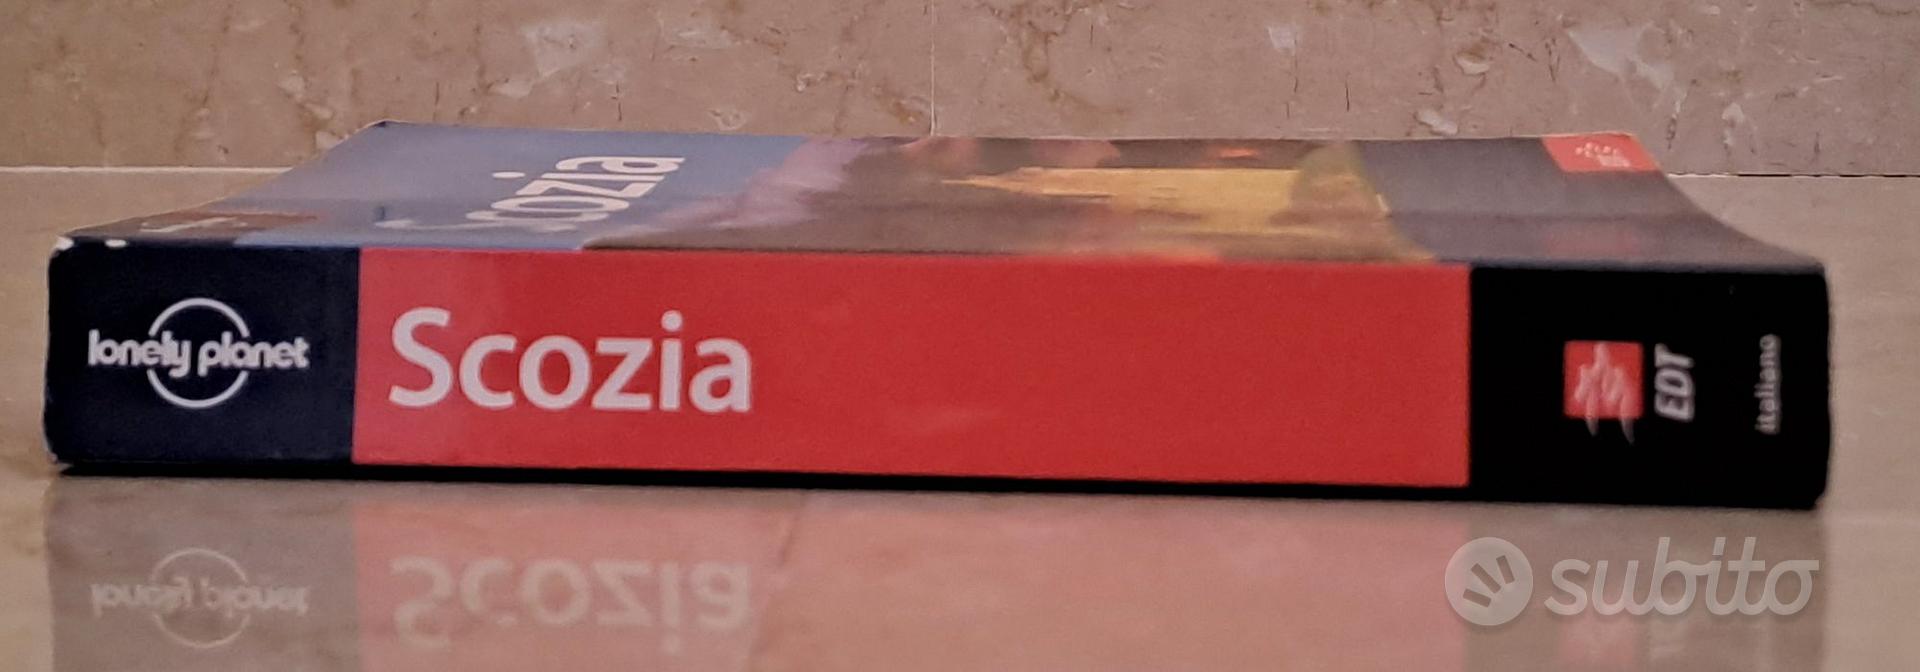 Guida Lonely Planet Scozia - Libri e Riviste In vendita a Perugia